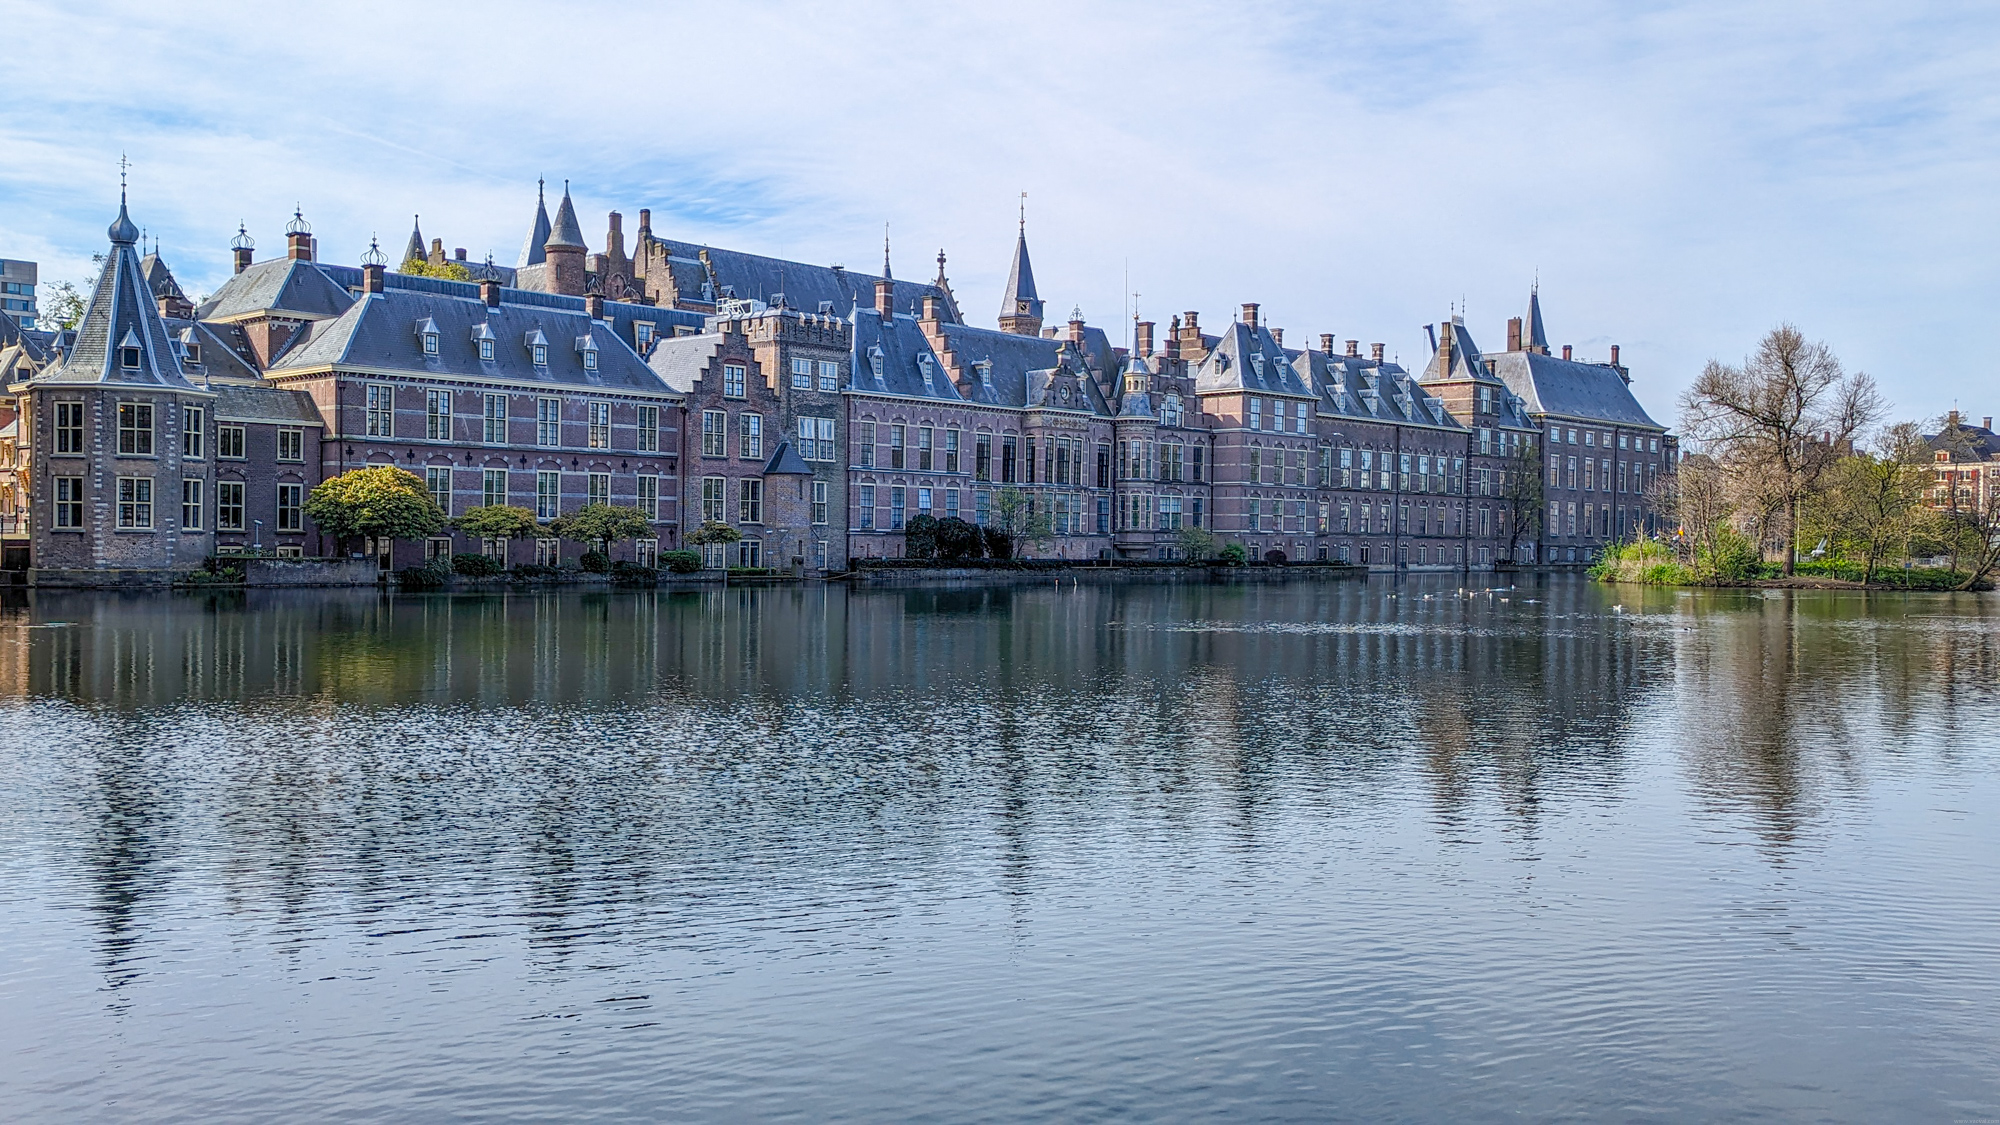 Binnenhof je historický komplex budov v Haagu, ktorý slúži ako politické a administratívne centrum.